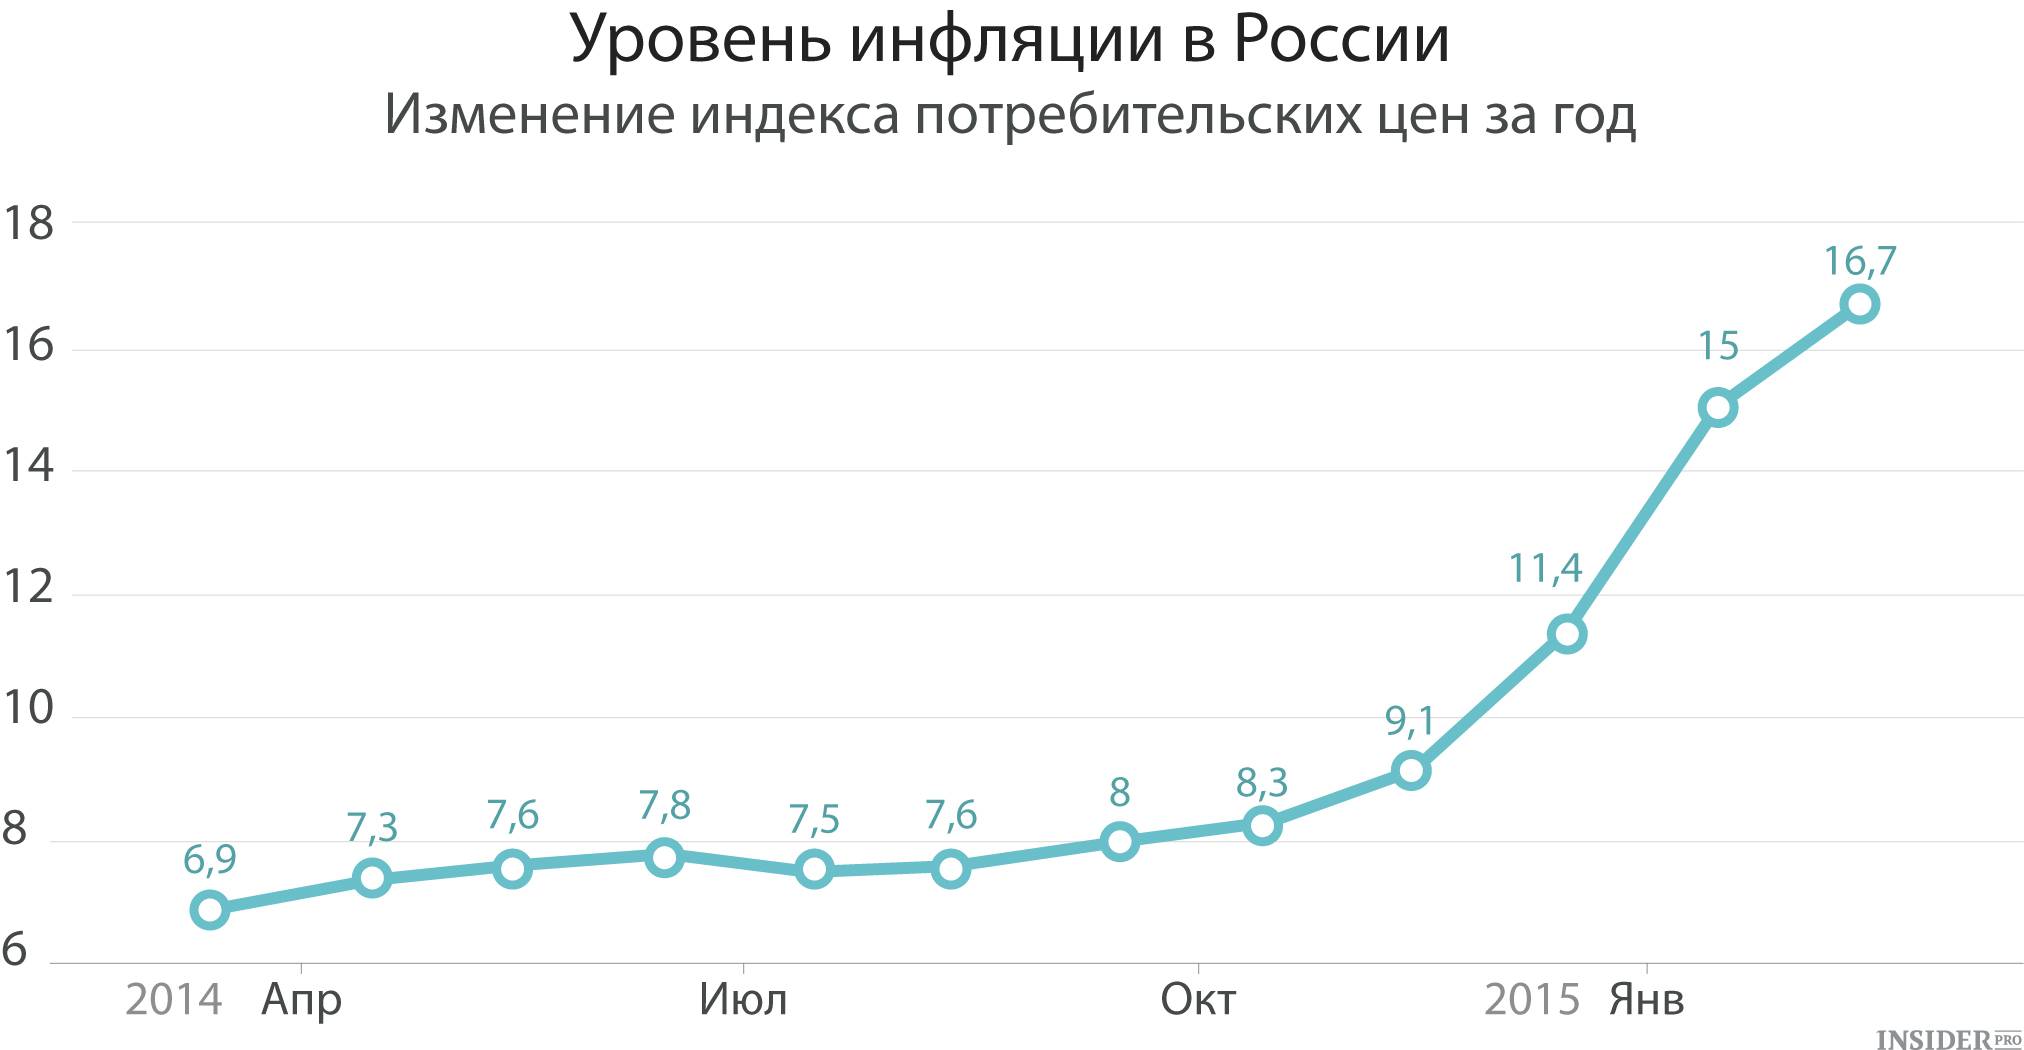 Уровень инфляции в российской федерации в 2021 году